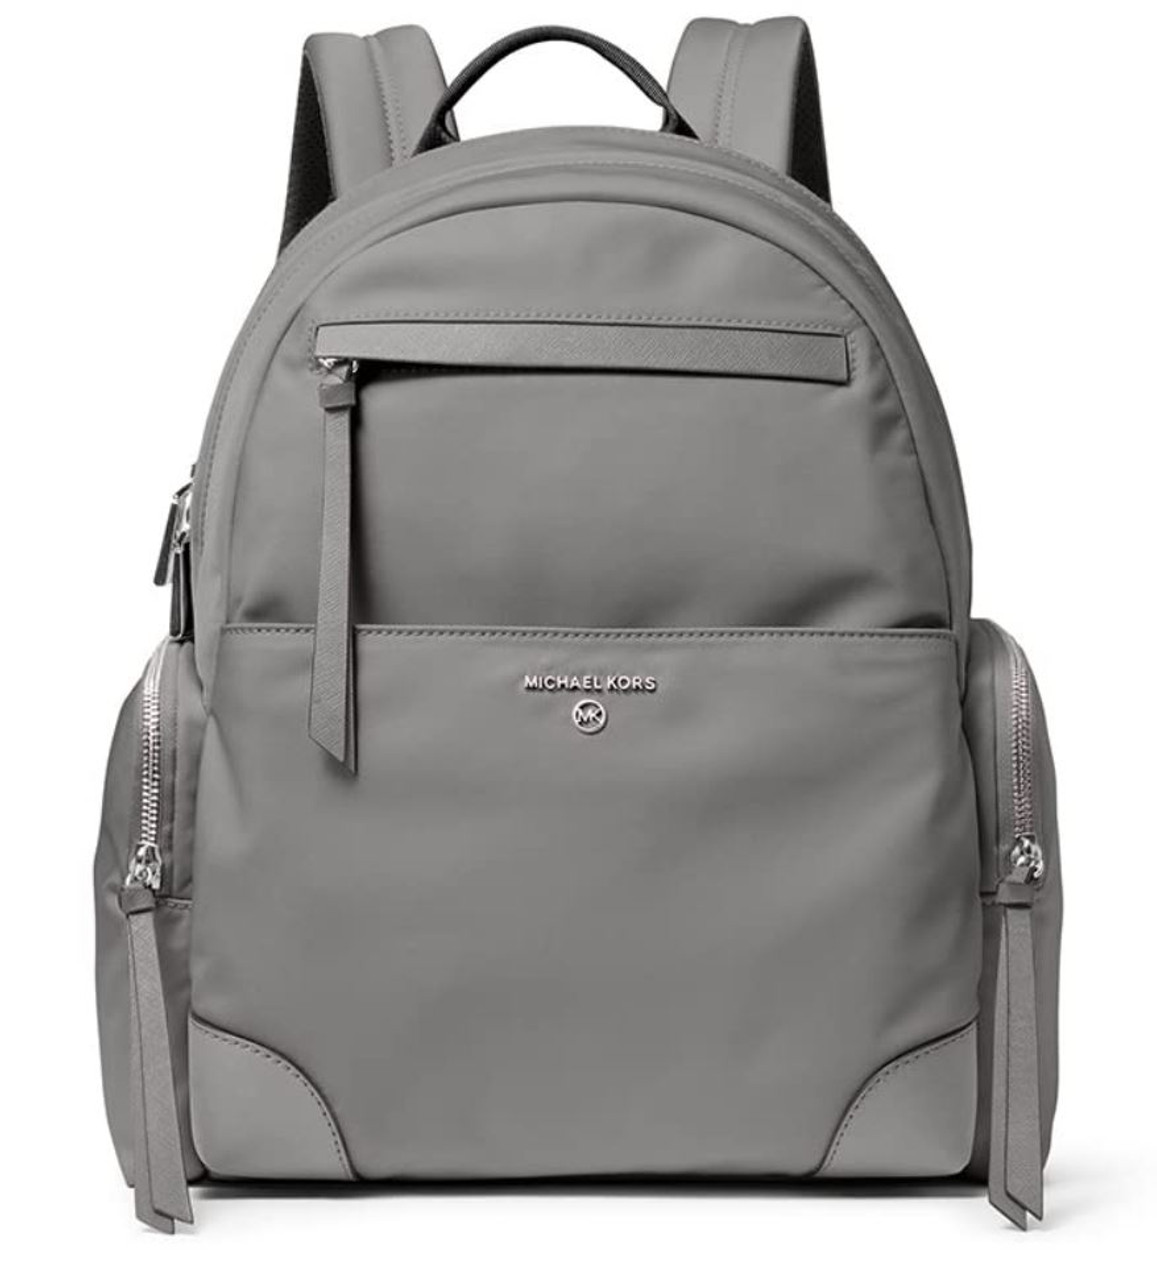 Backpacks Michael Kors - Kelsey dark grey nylon backpack - 30F7SO2B7C030